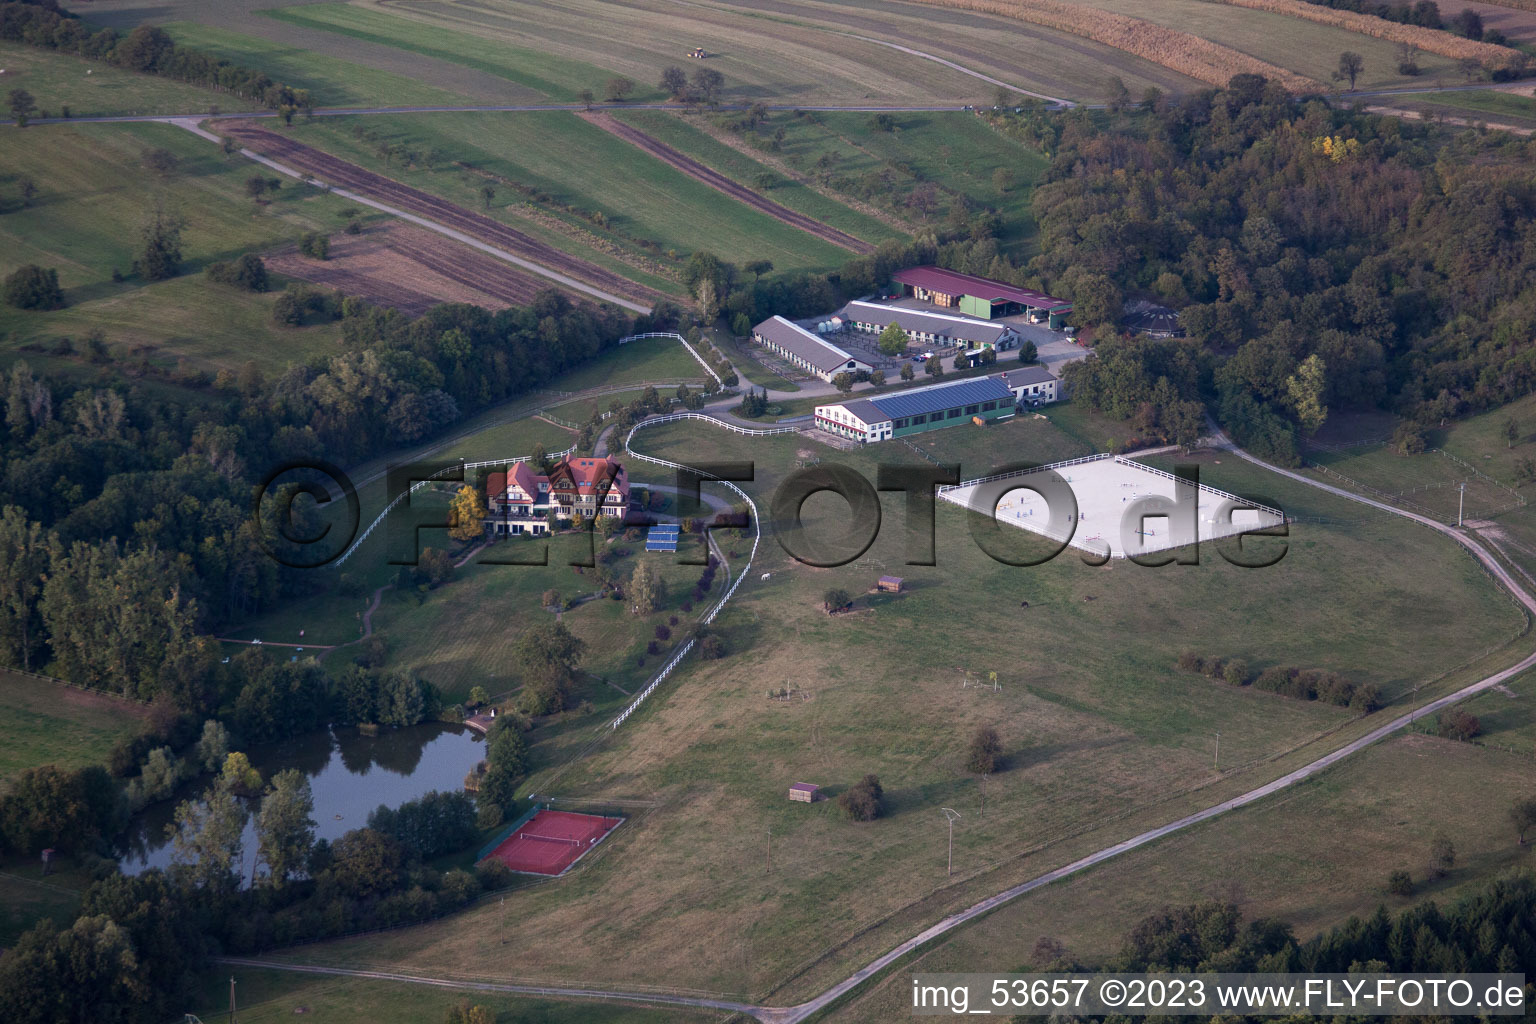 Griesbach im Bundesland Bas-Rhin, Frankreich von der Drohne aus gesehen